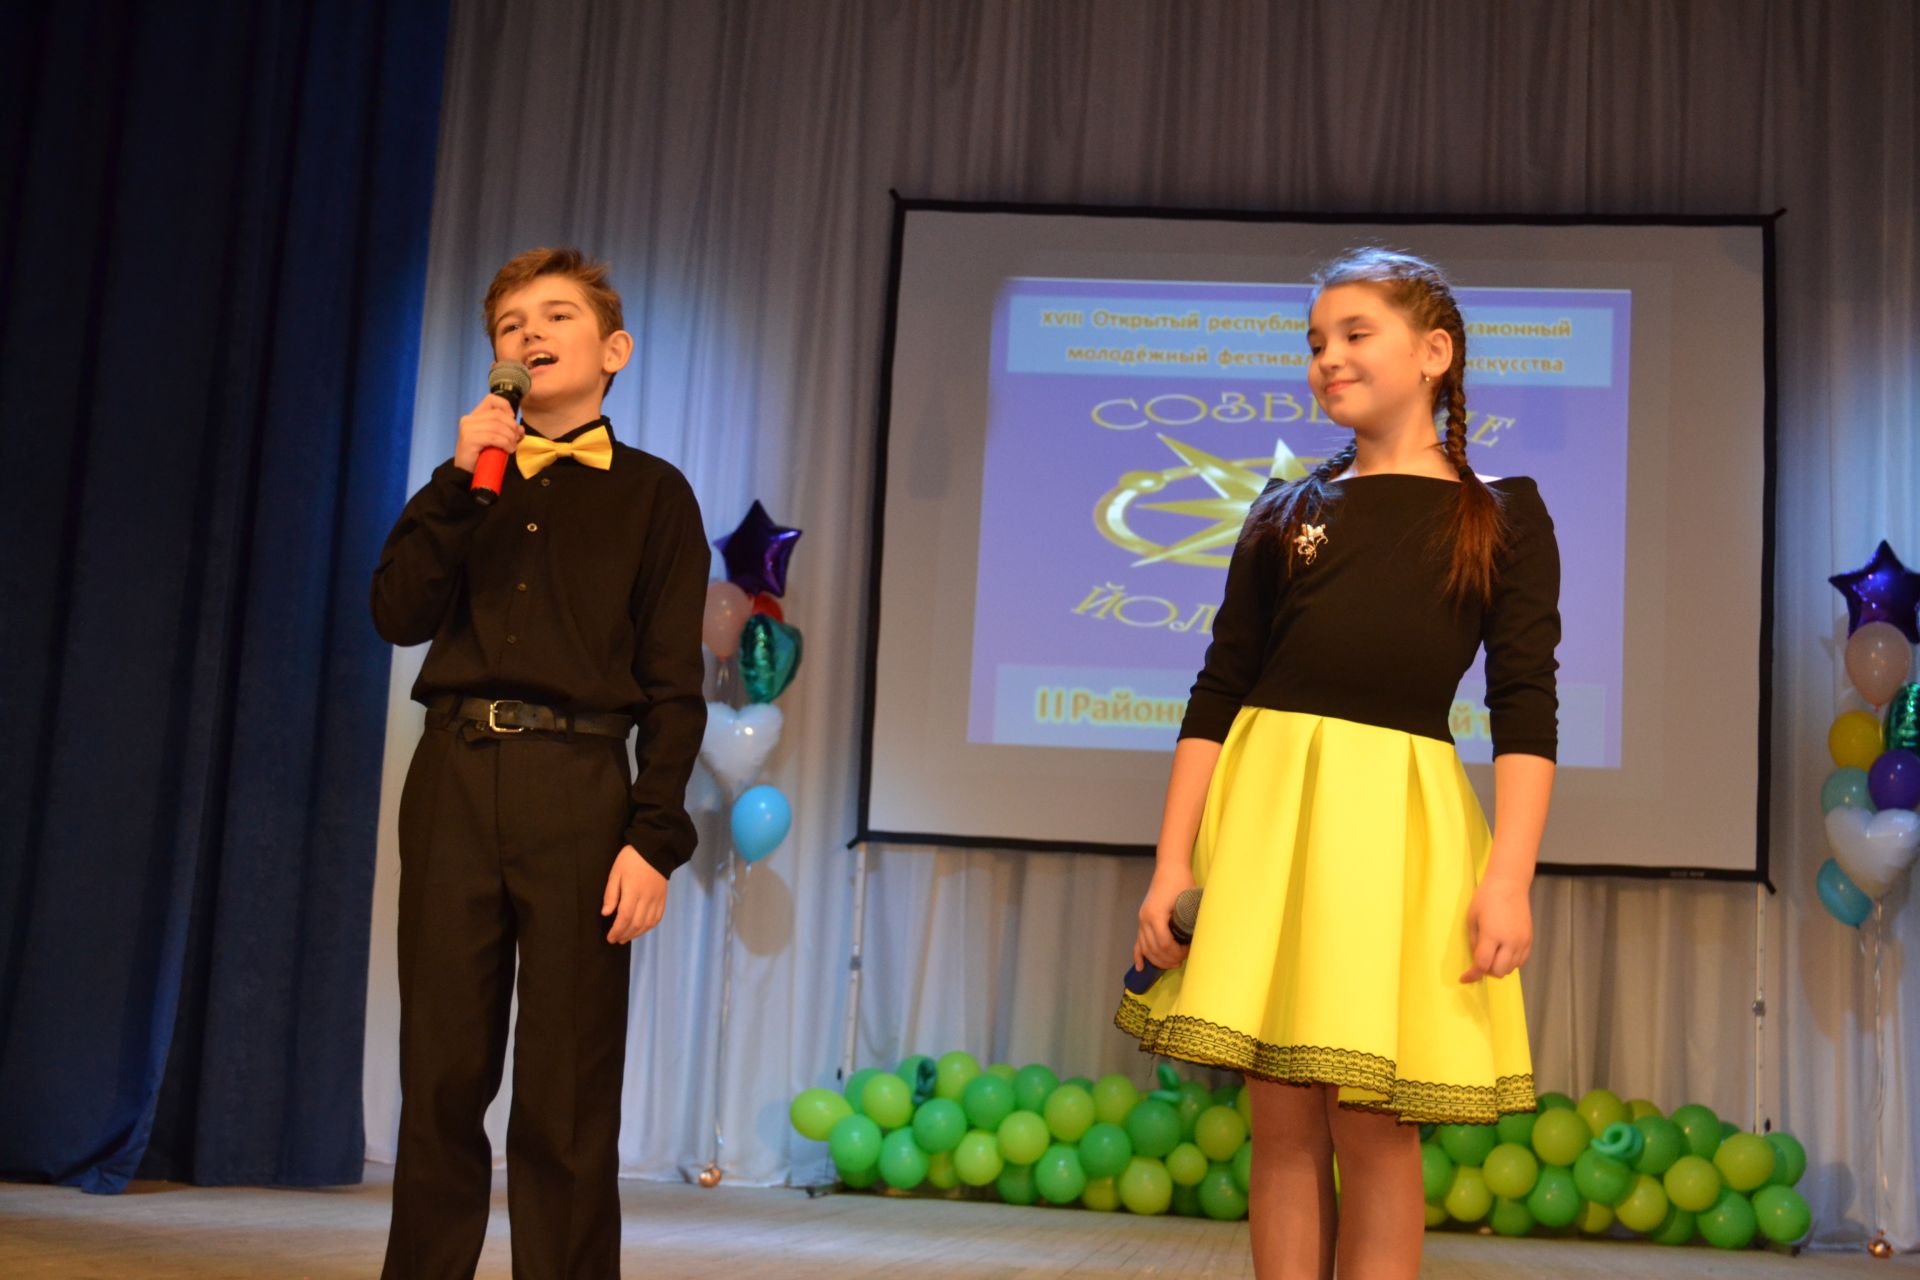 Определены победители районного тура фестиваля «Созвездие»-«Йолдызлык».